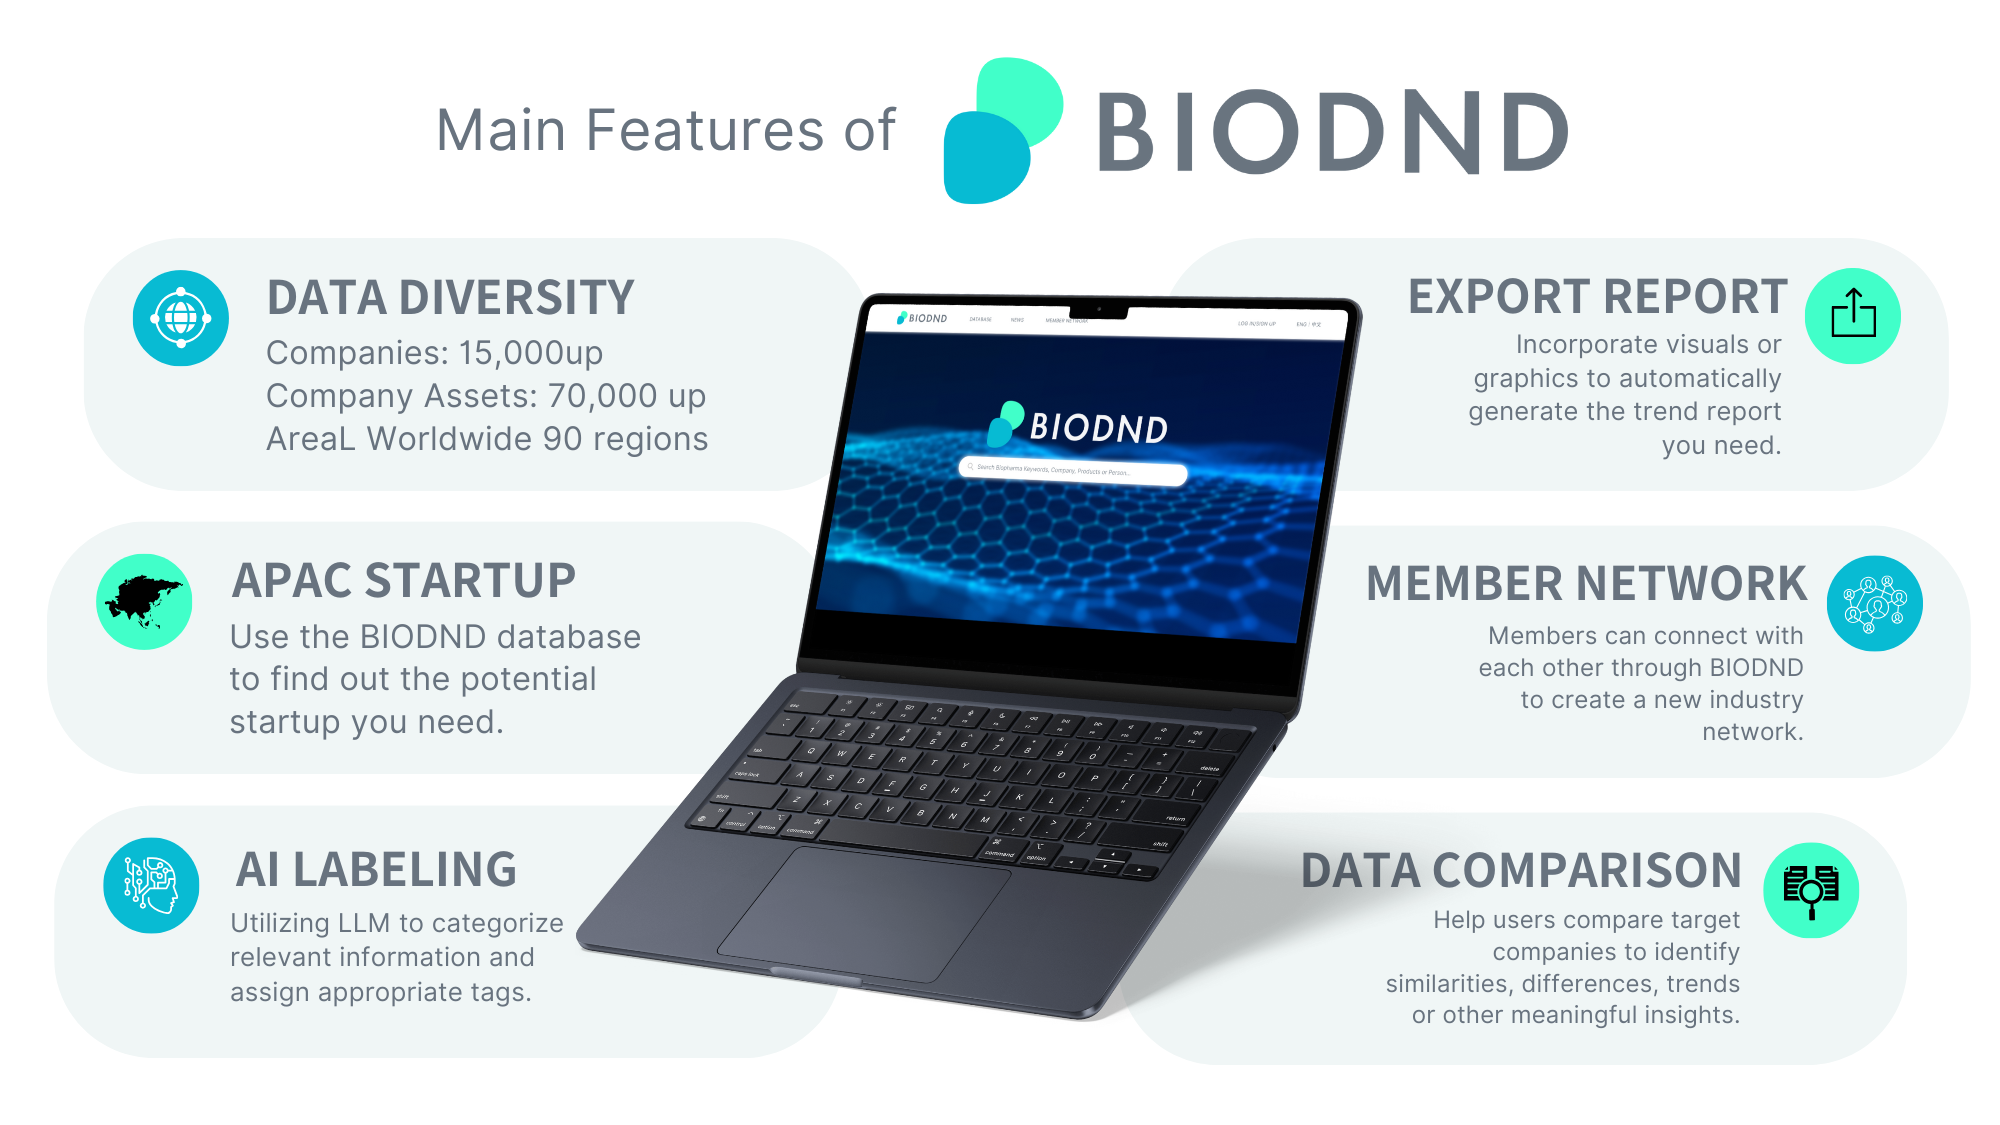 BIODND 生醫資料庫產品特色與功能介紹。